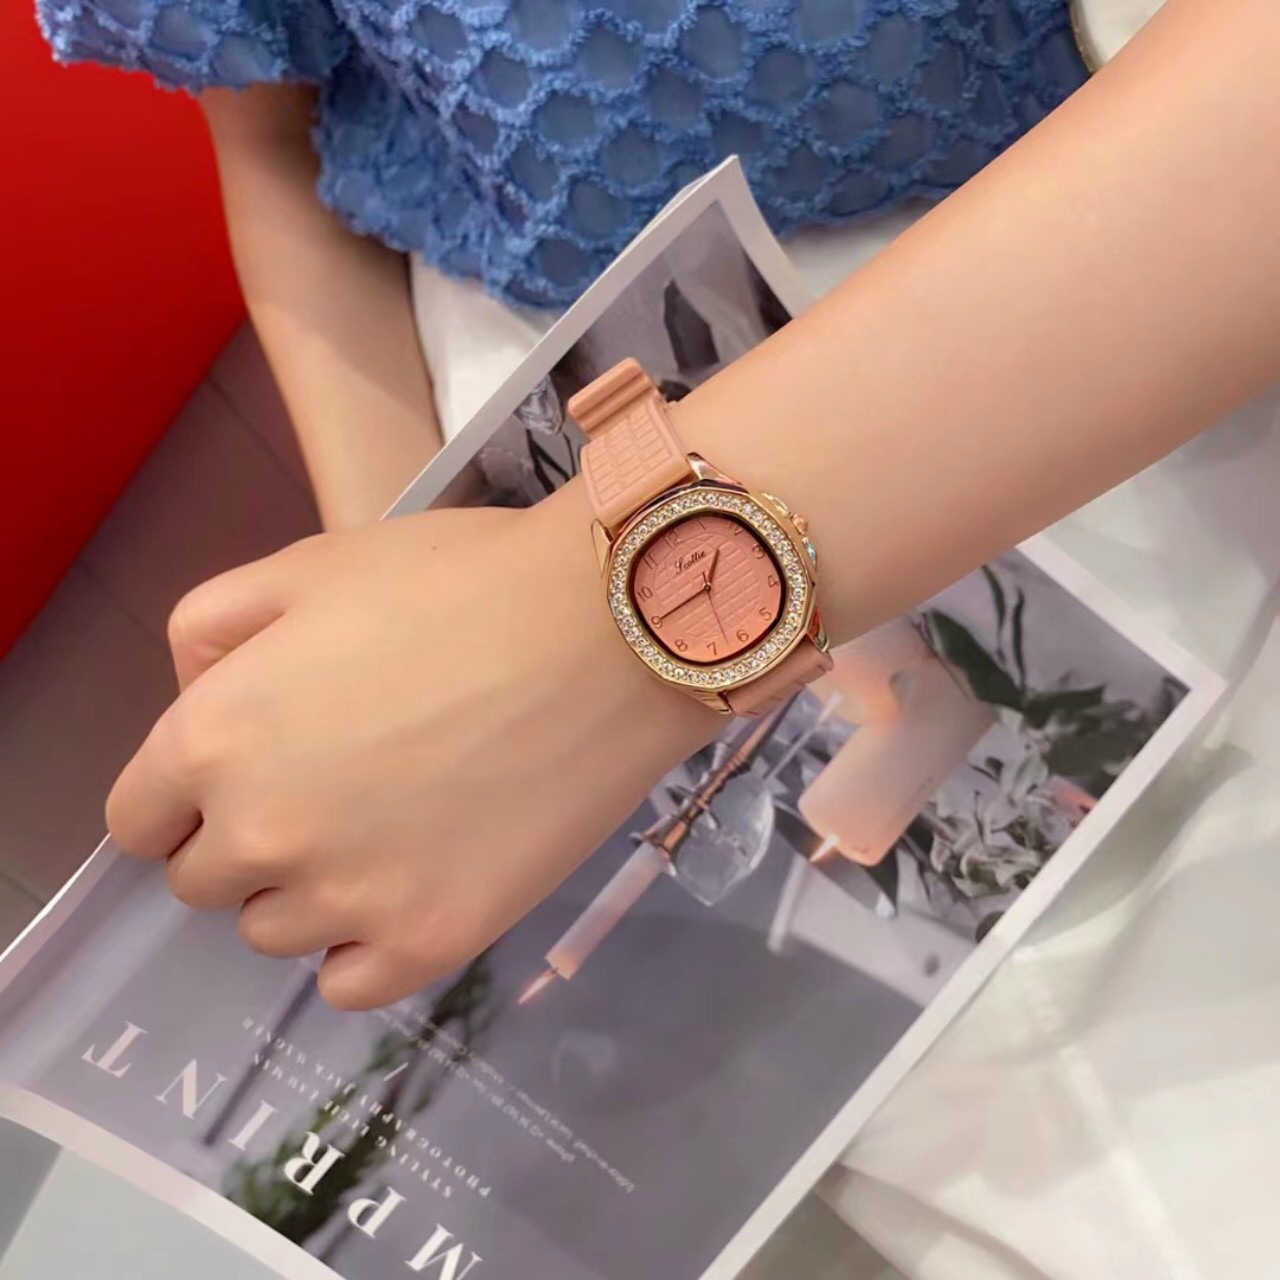 Đồng hồ nữ scottie chính hãng dây silicon siêu dẻo đeo tay êm ái. Đồng hồ nữ sang trọng nhiều màu sắc dễ phối đồ